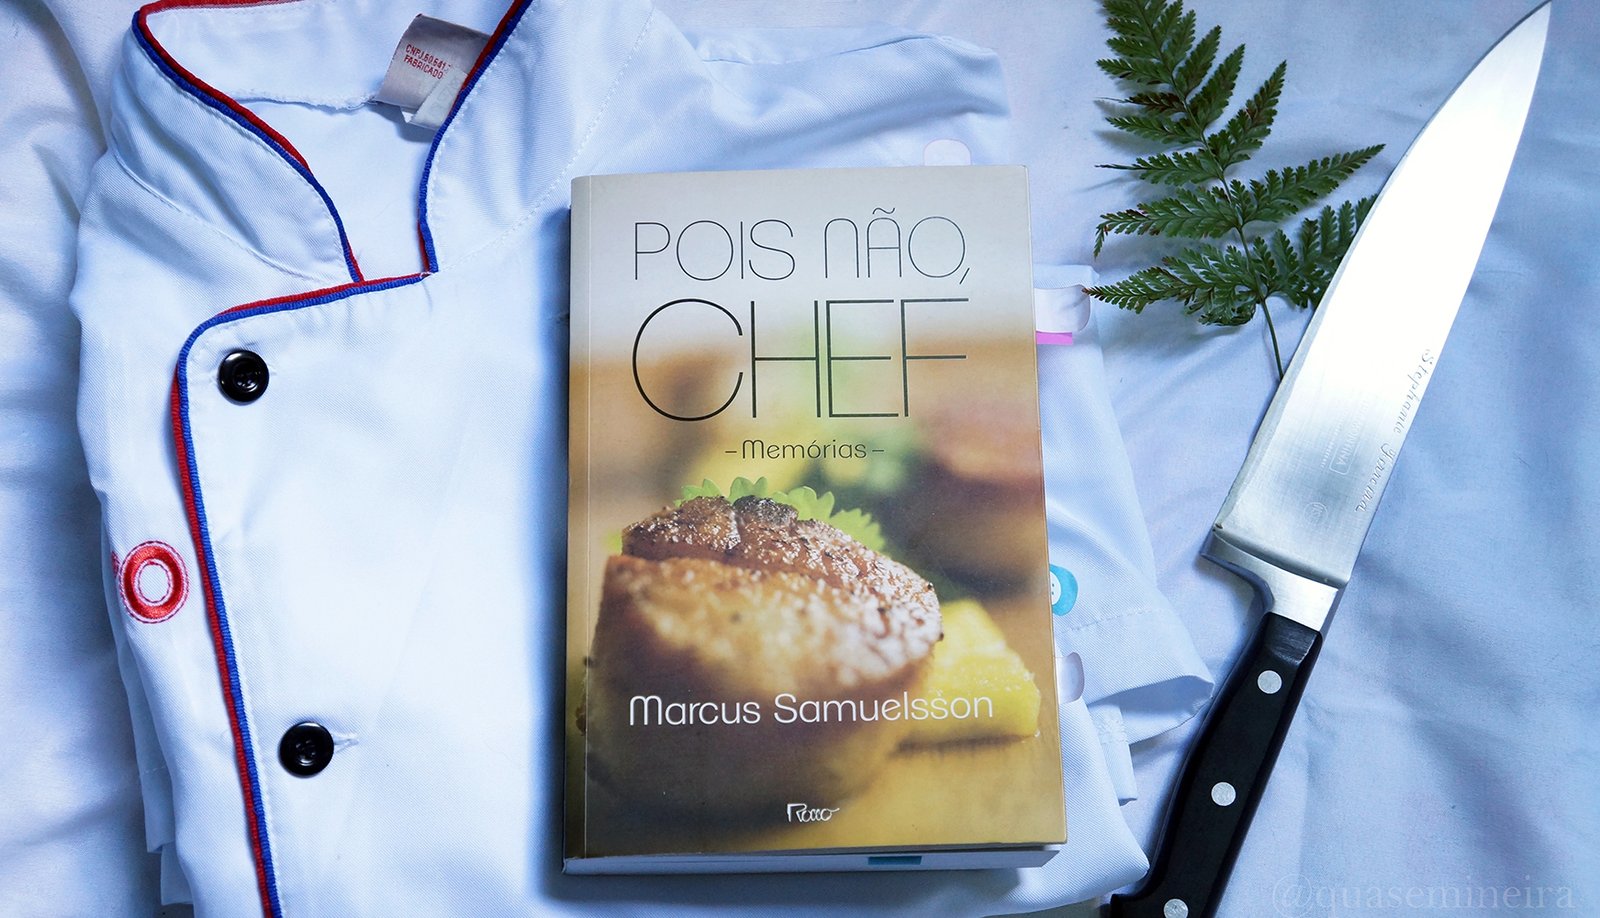 Pois não, Chef — Marcus Samuelsson 2